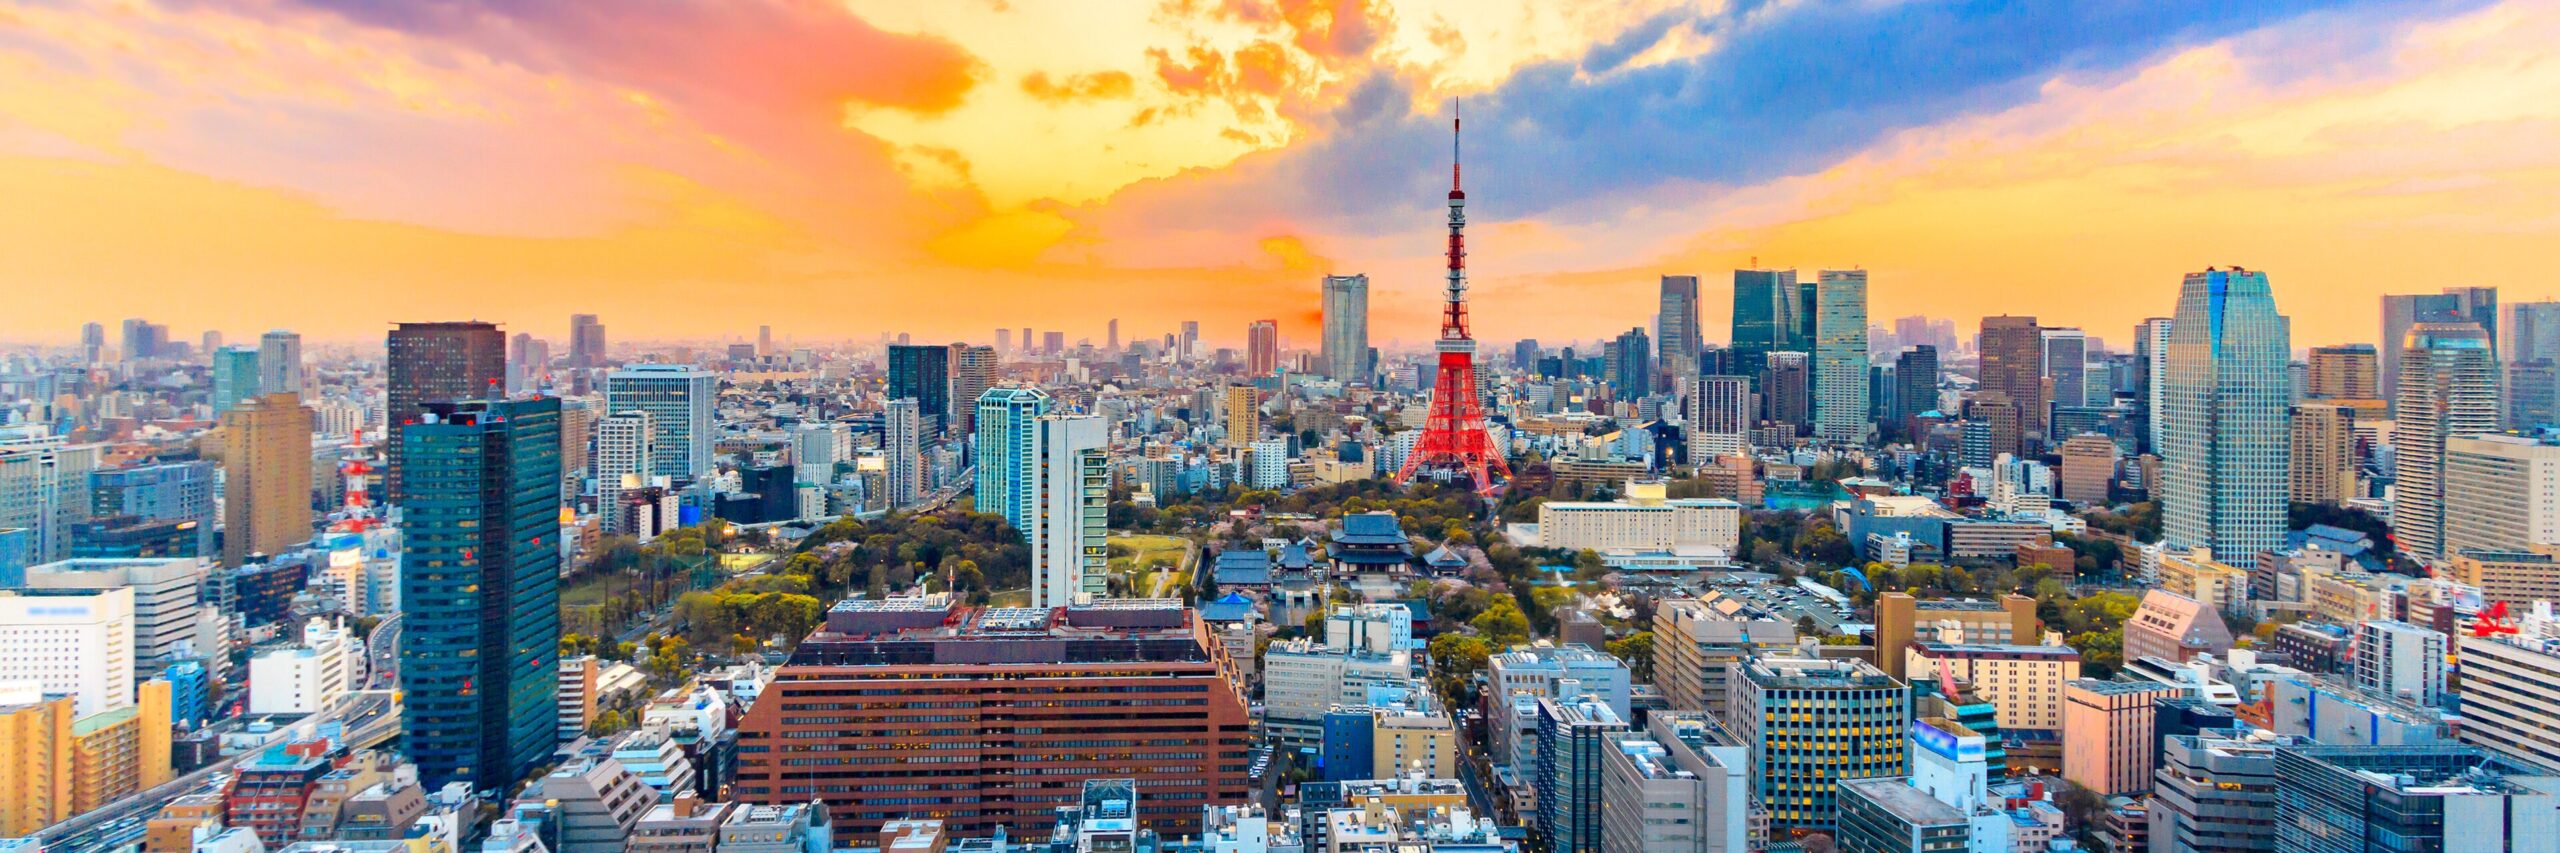 Estos son algunos de los beneficios que han traído los Juegos Olímpicos 2020 para los futuros visitantes de Tokio